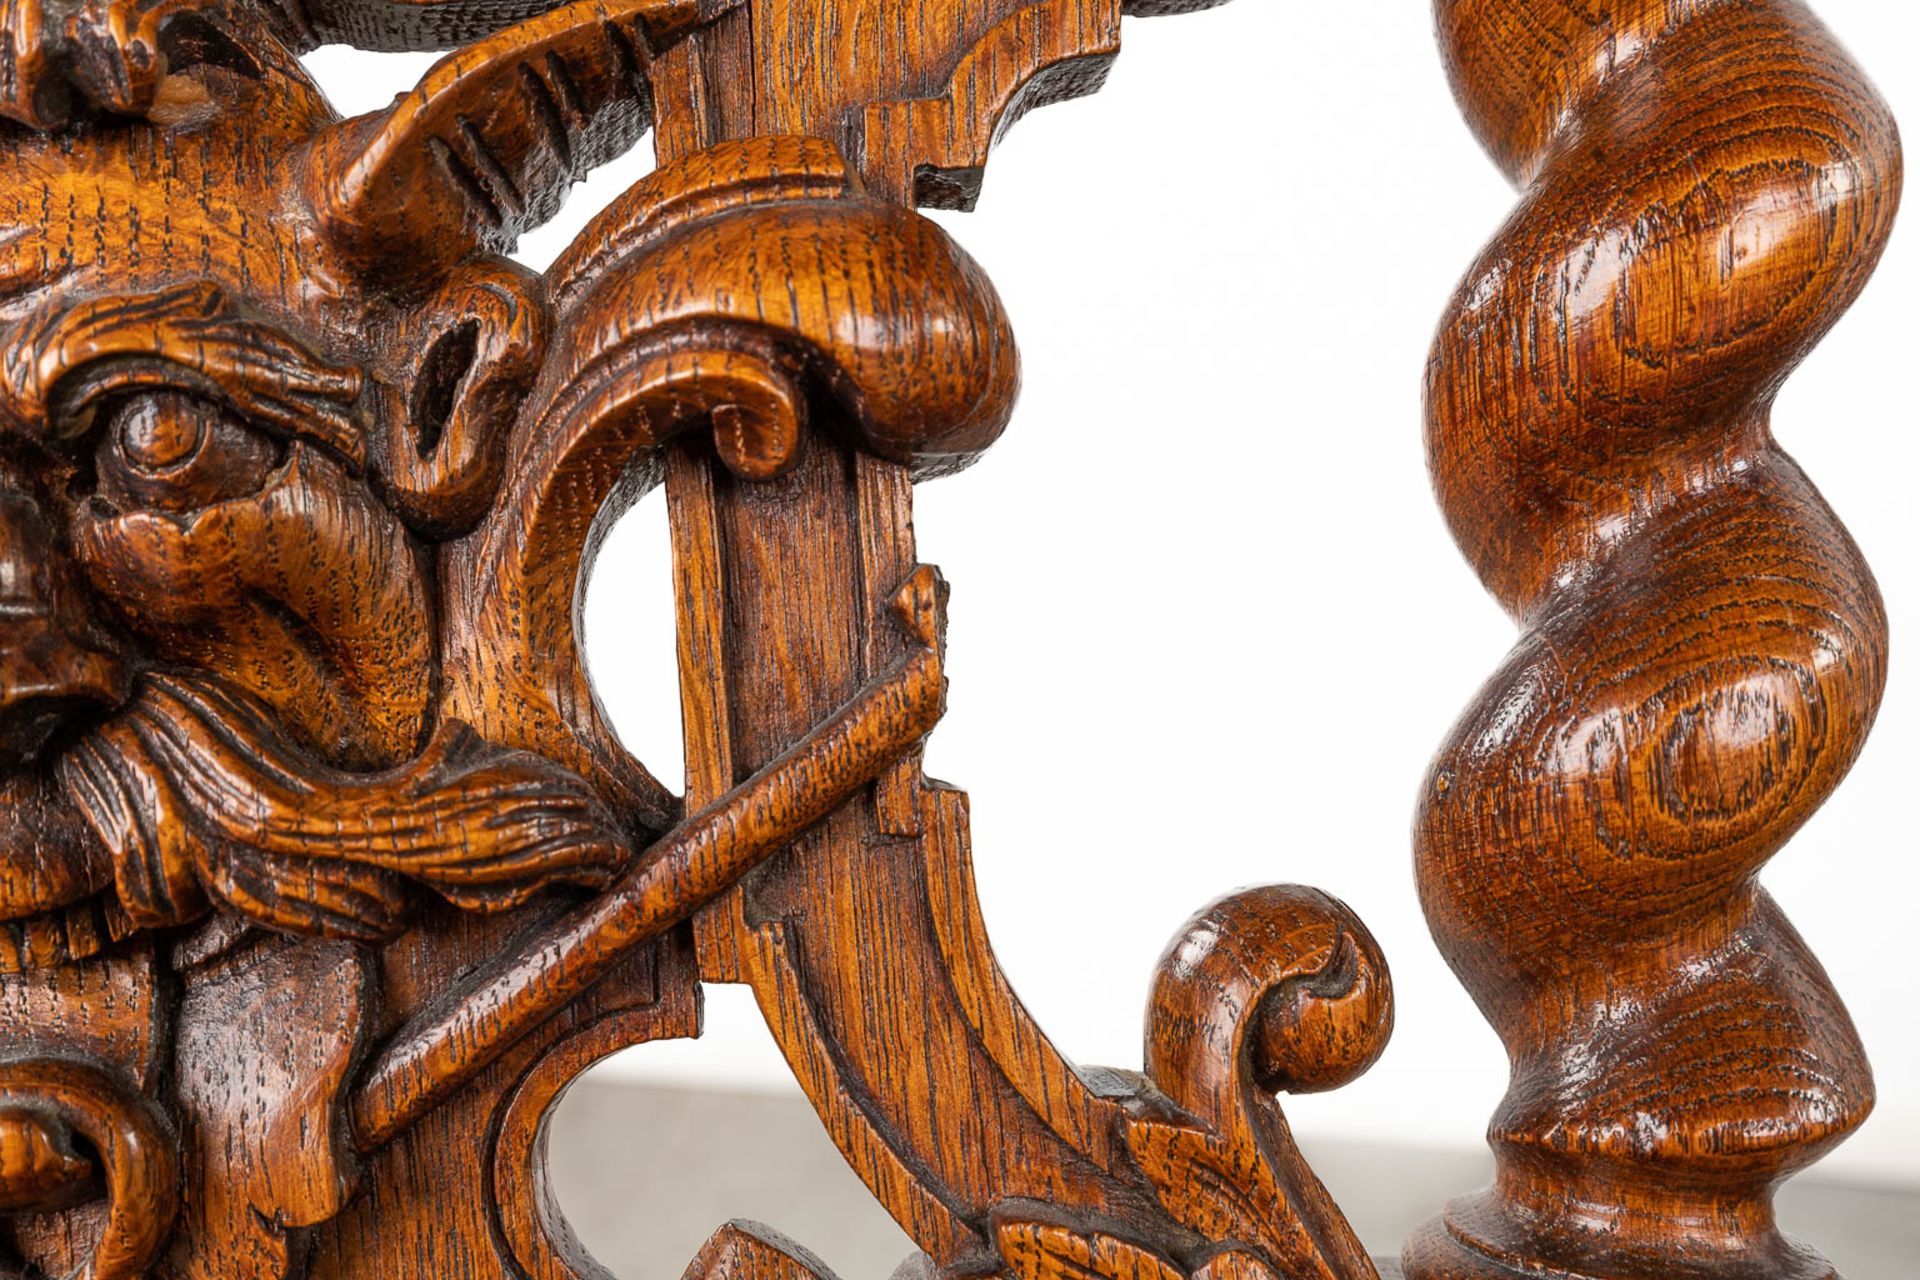 A set of 4 antique wood-sculptured smoker's chairs, oak. Circa 1900. (L:55 x W:44 x H:80 cm) - Bild 4 aus 15